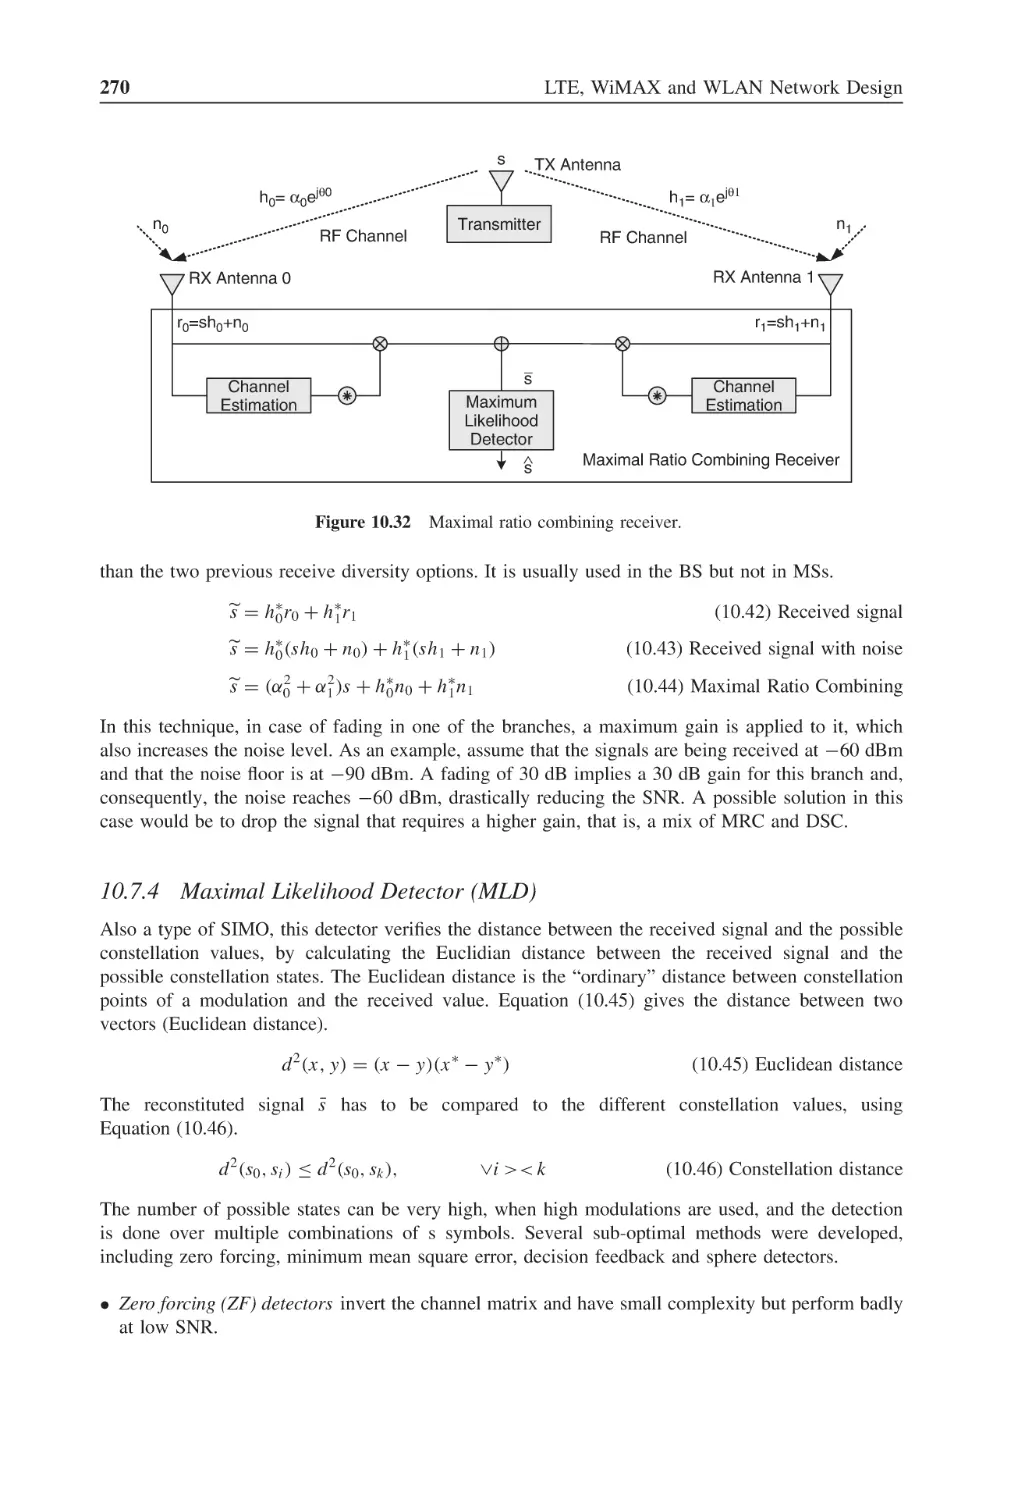 10.7.4 Maximal Likelihood Detector (MLD)